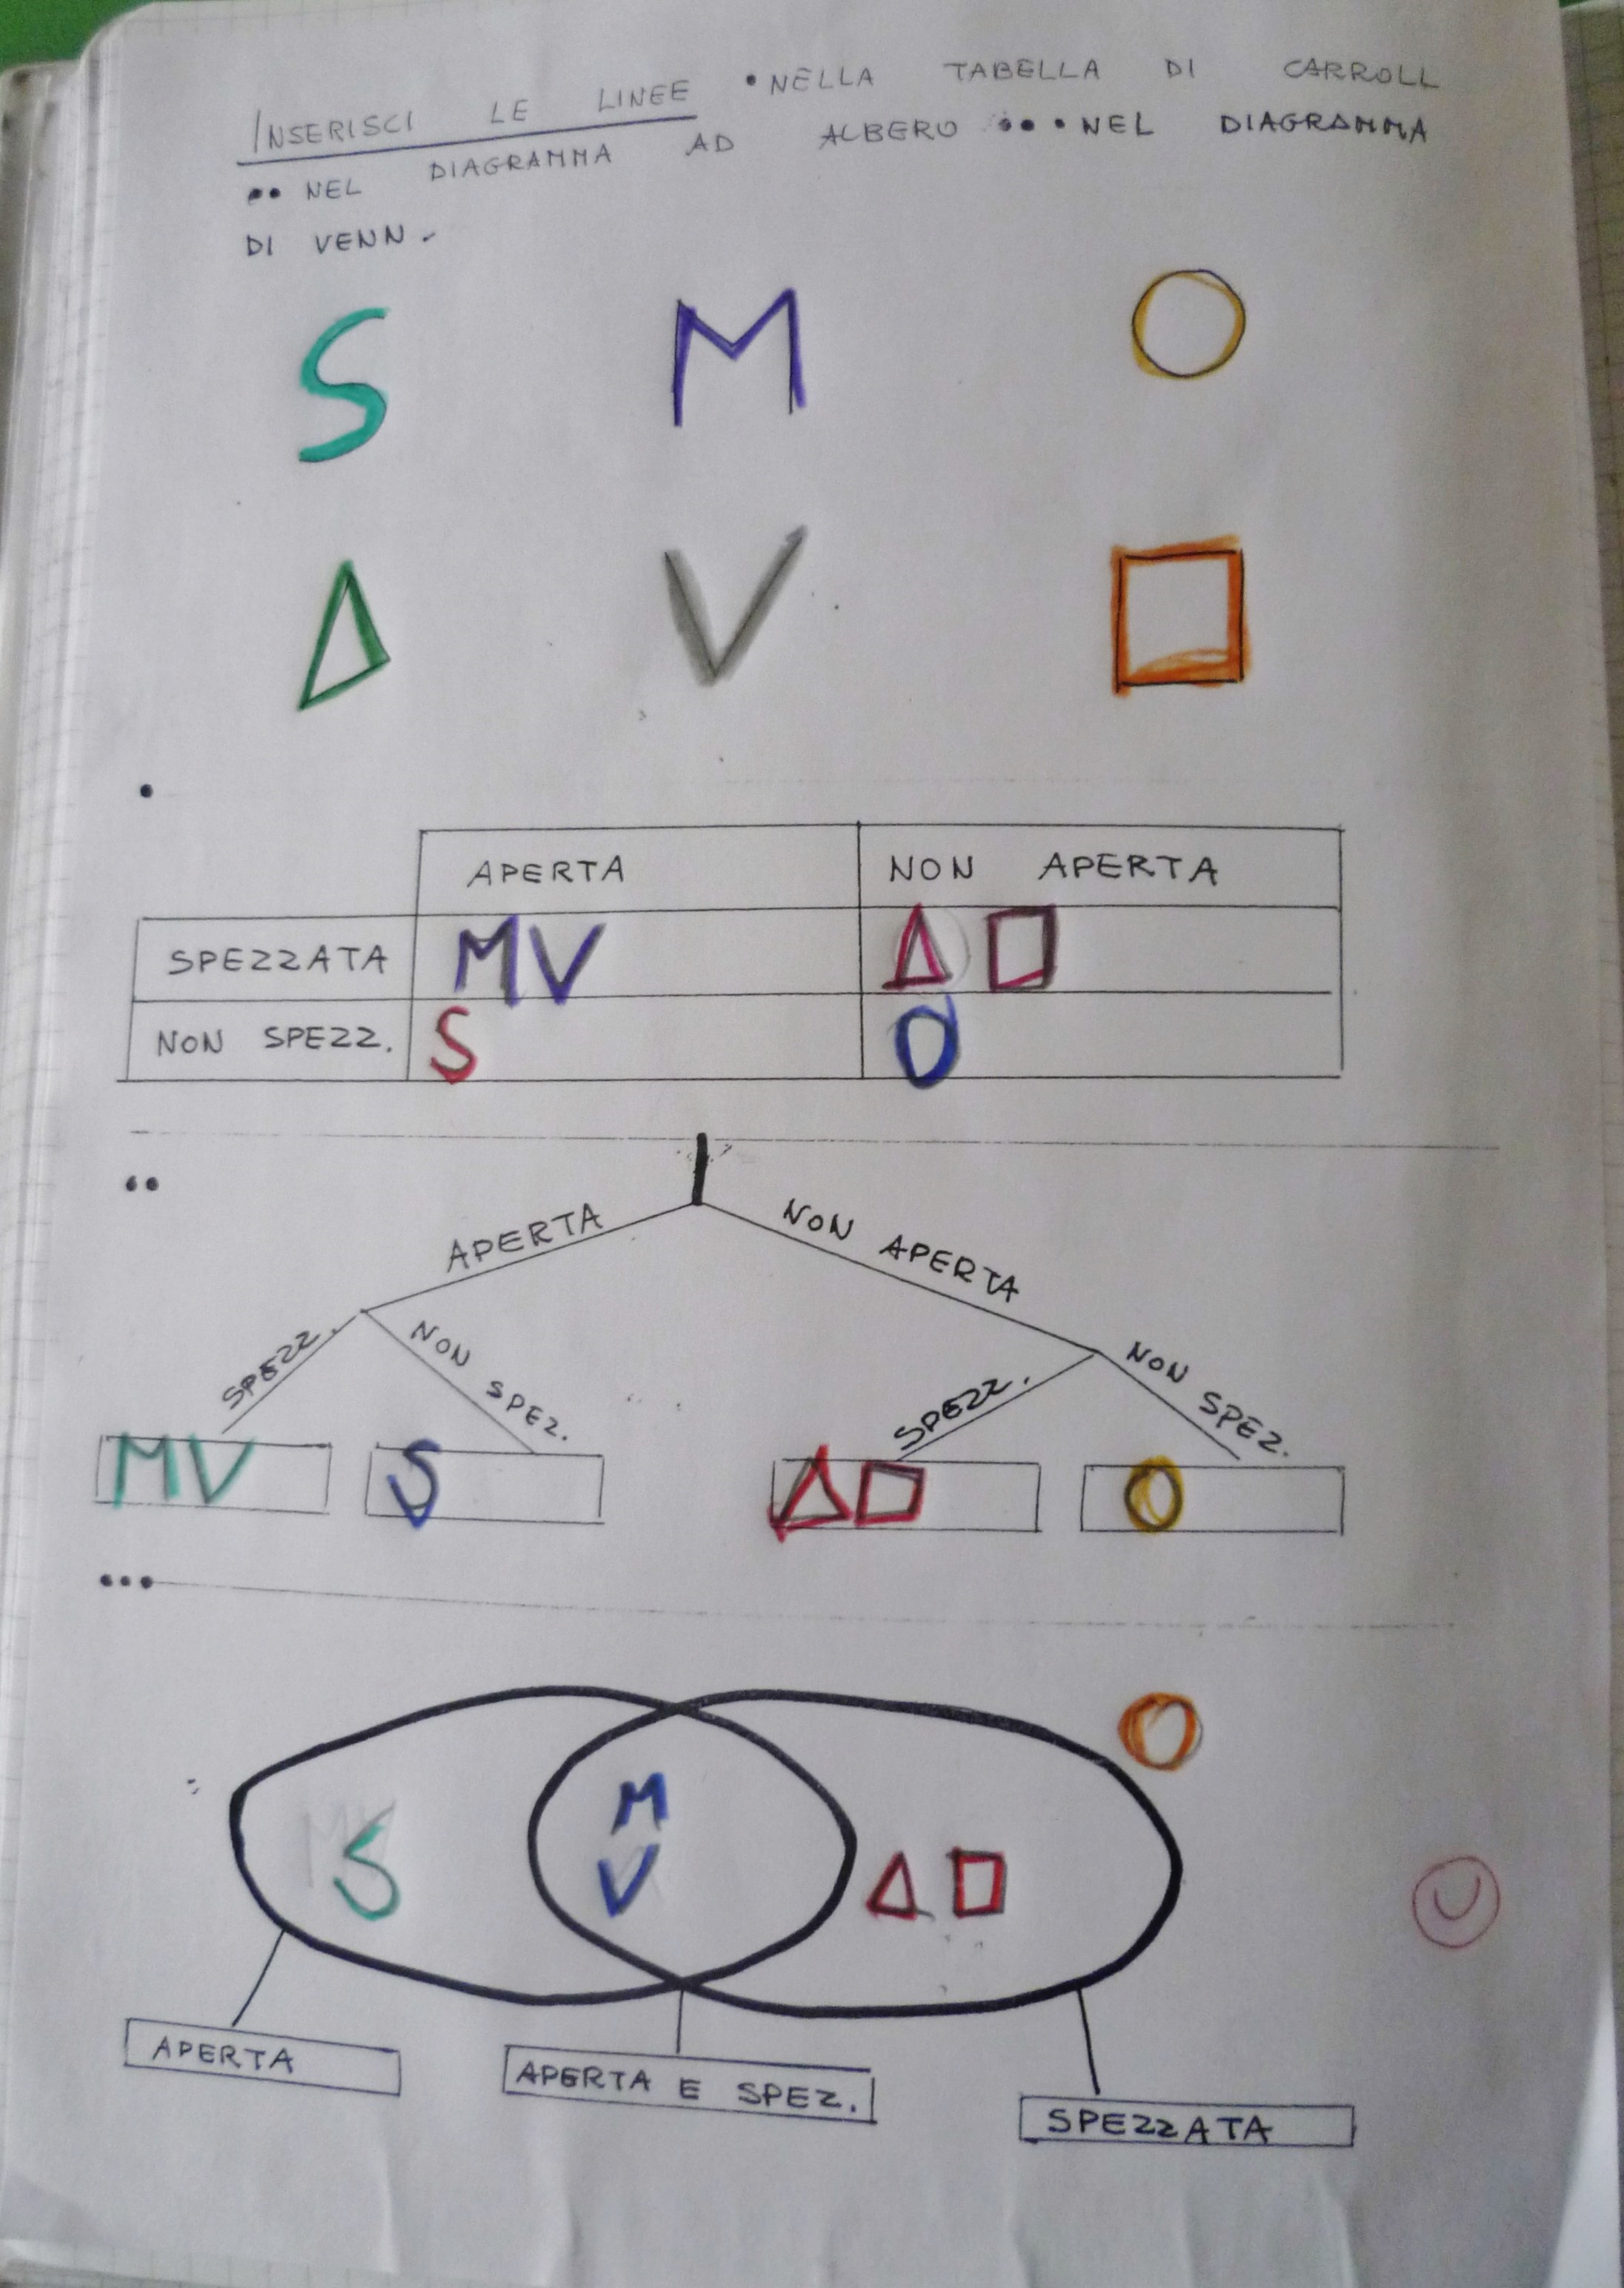 Diagramma Di Eulero Venn In Seconda E In Terza